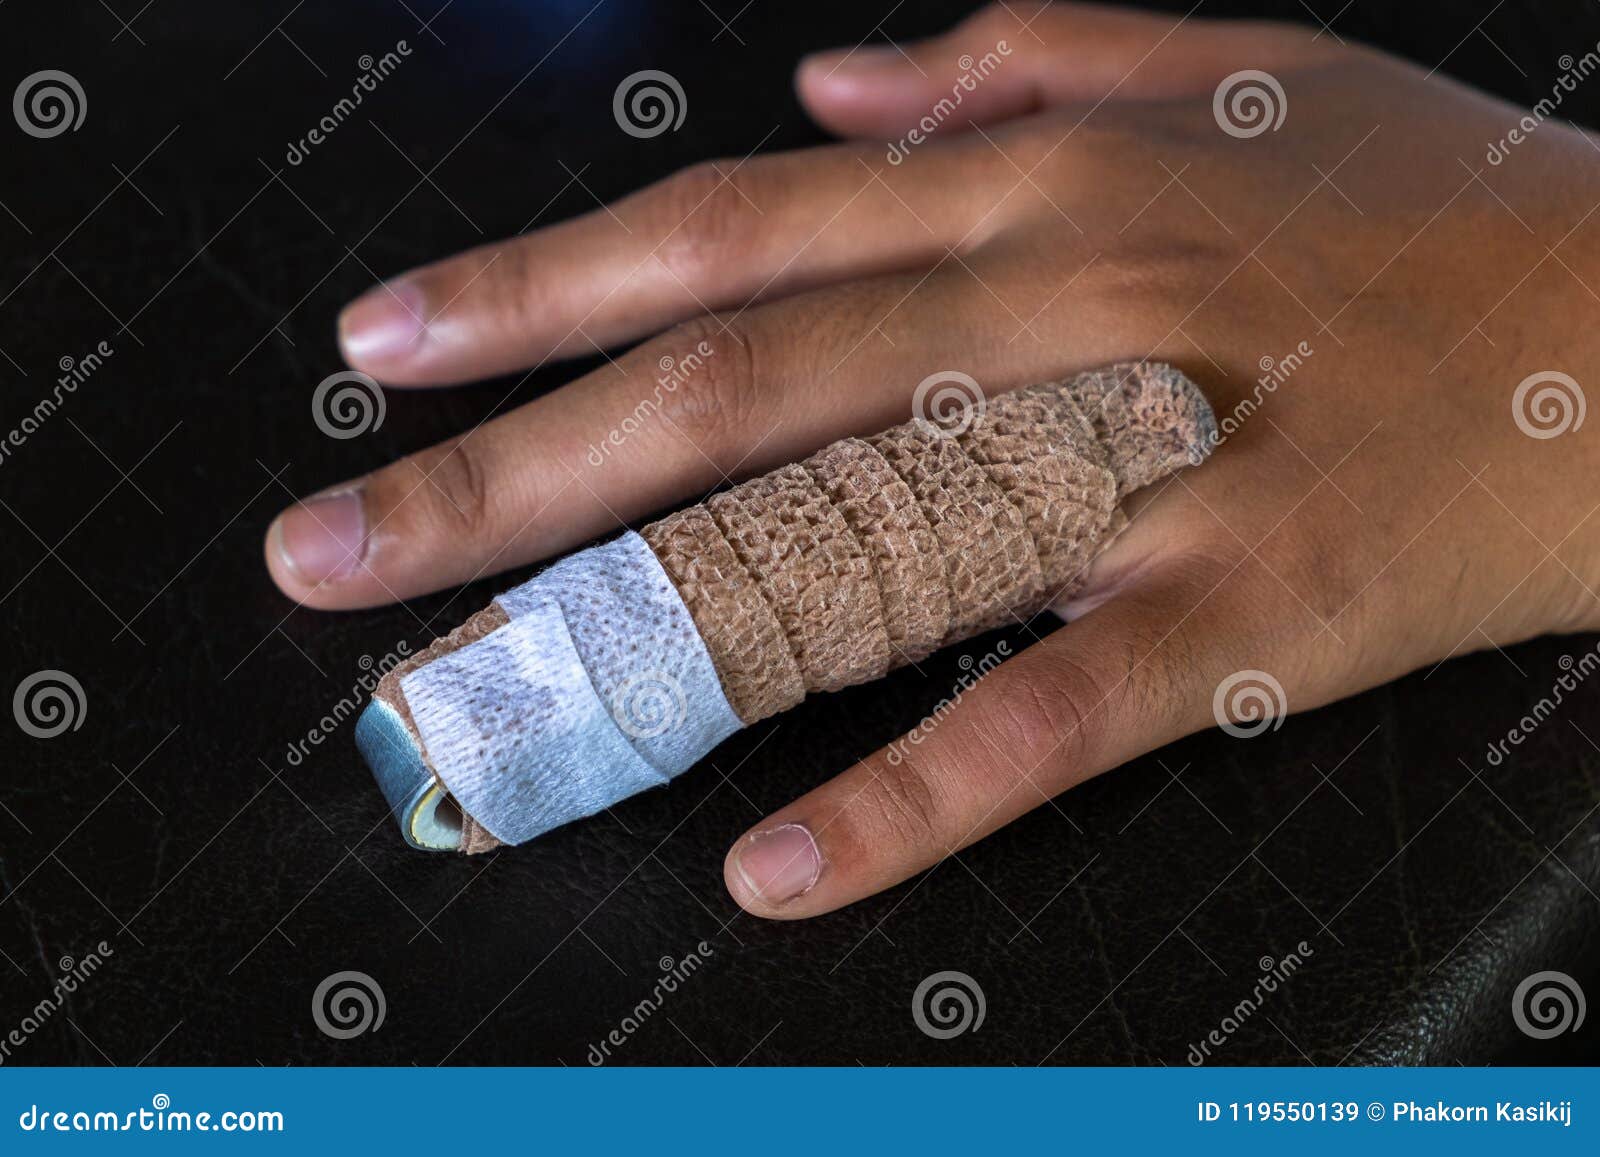 SMATIS Trigger Finger Splint 2 Pieces Finger Brace for Arthritis Pain and  Support with Aluminum Strip Adjustable Finger Splints Fits Index Finger  Middle Finger Ring Finger